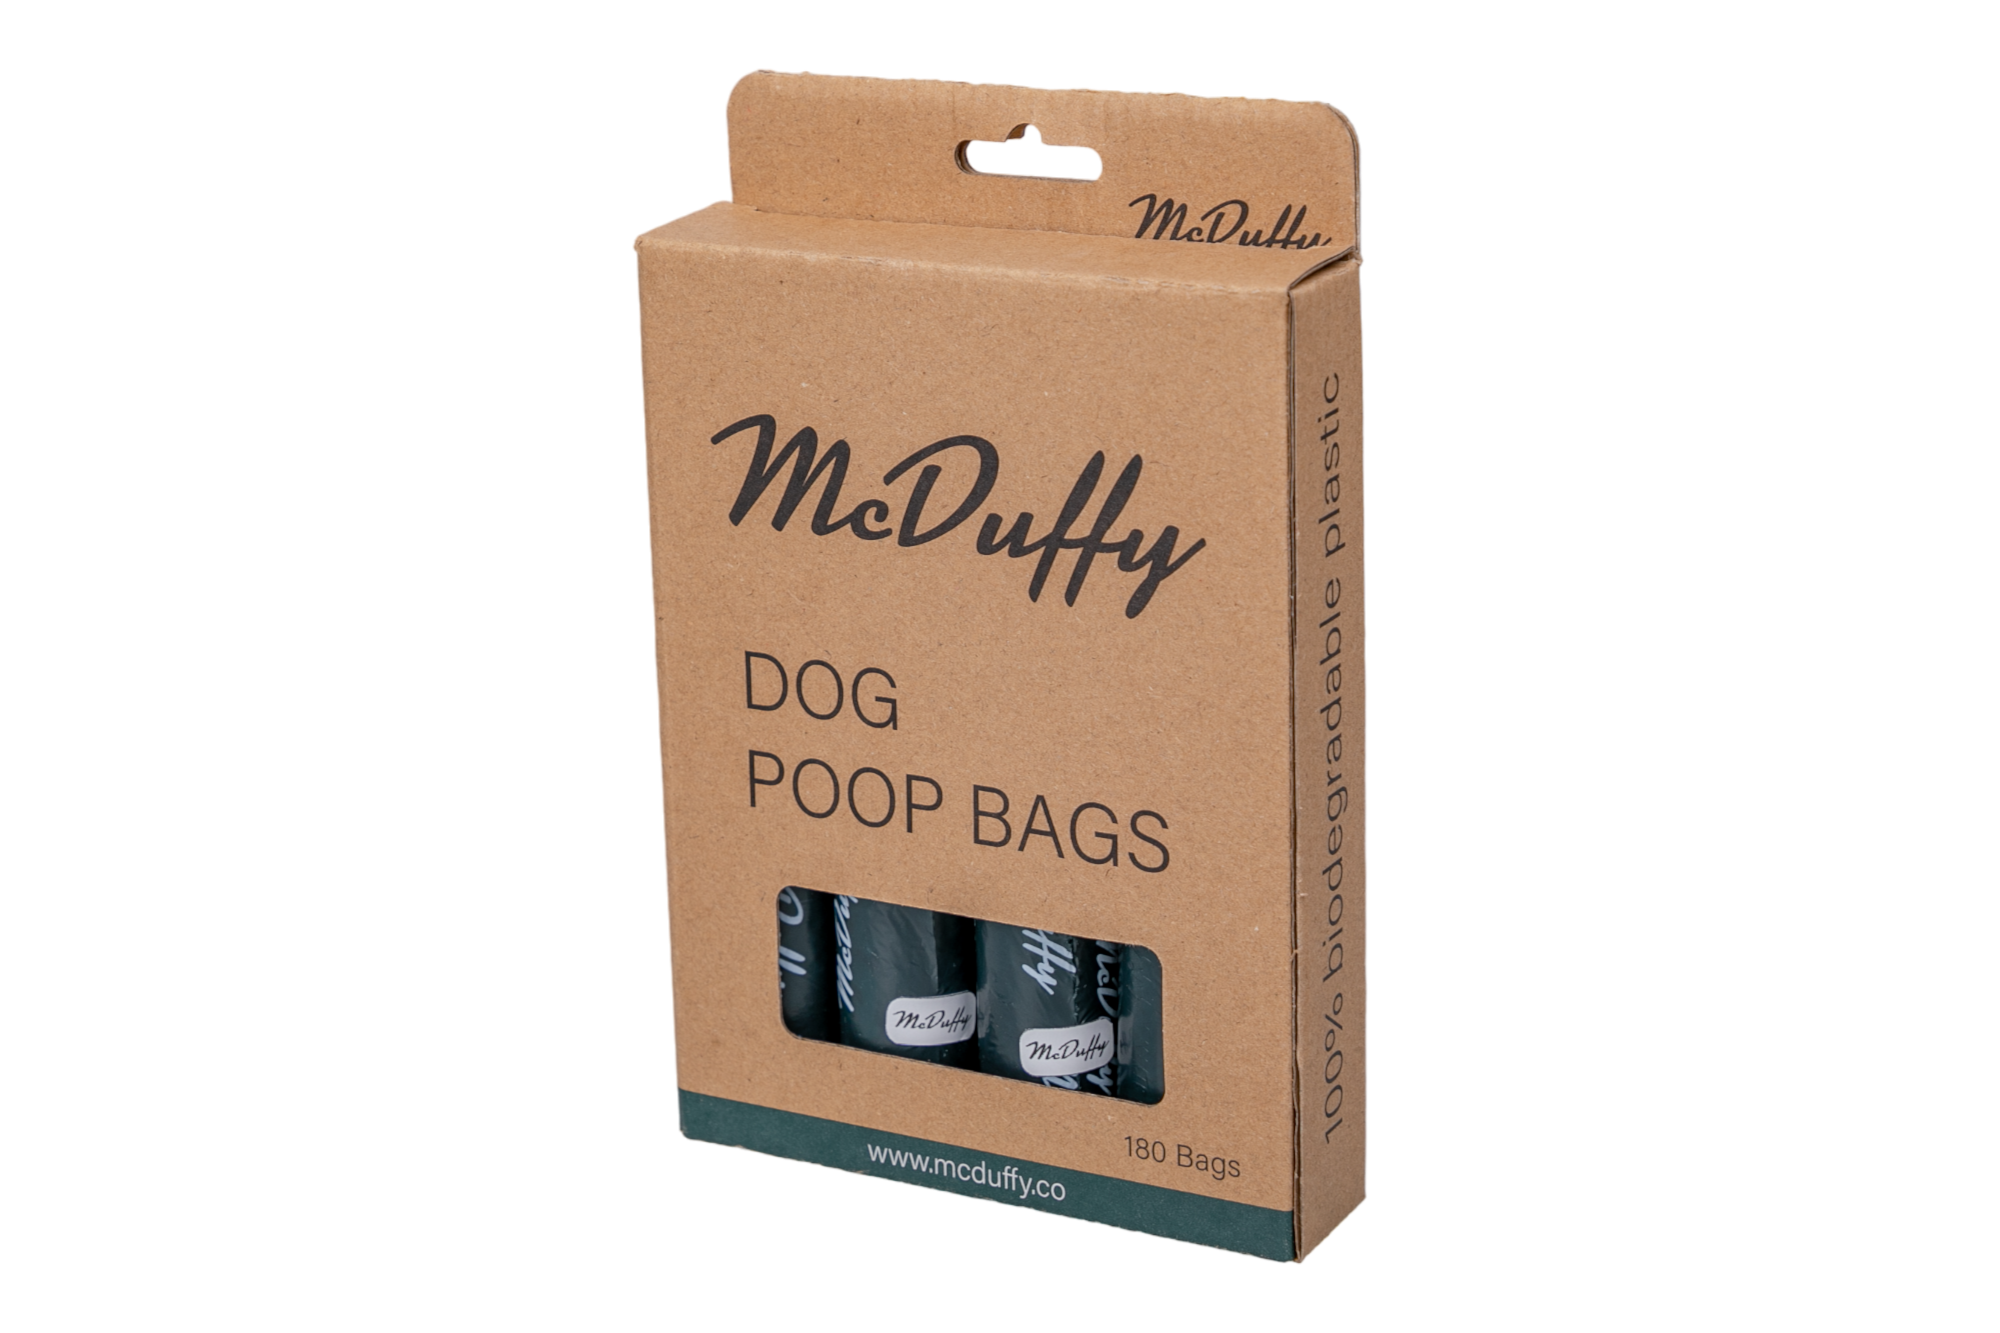 McDuffy Poop Bags